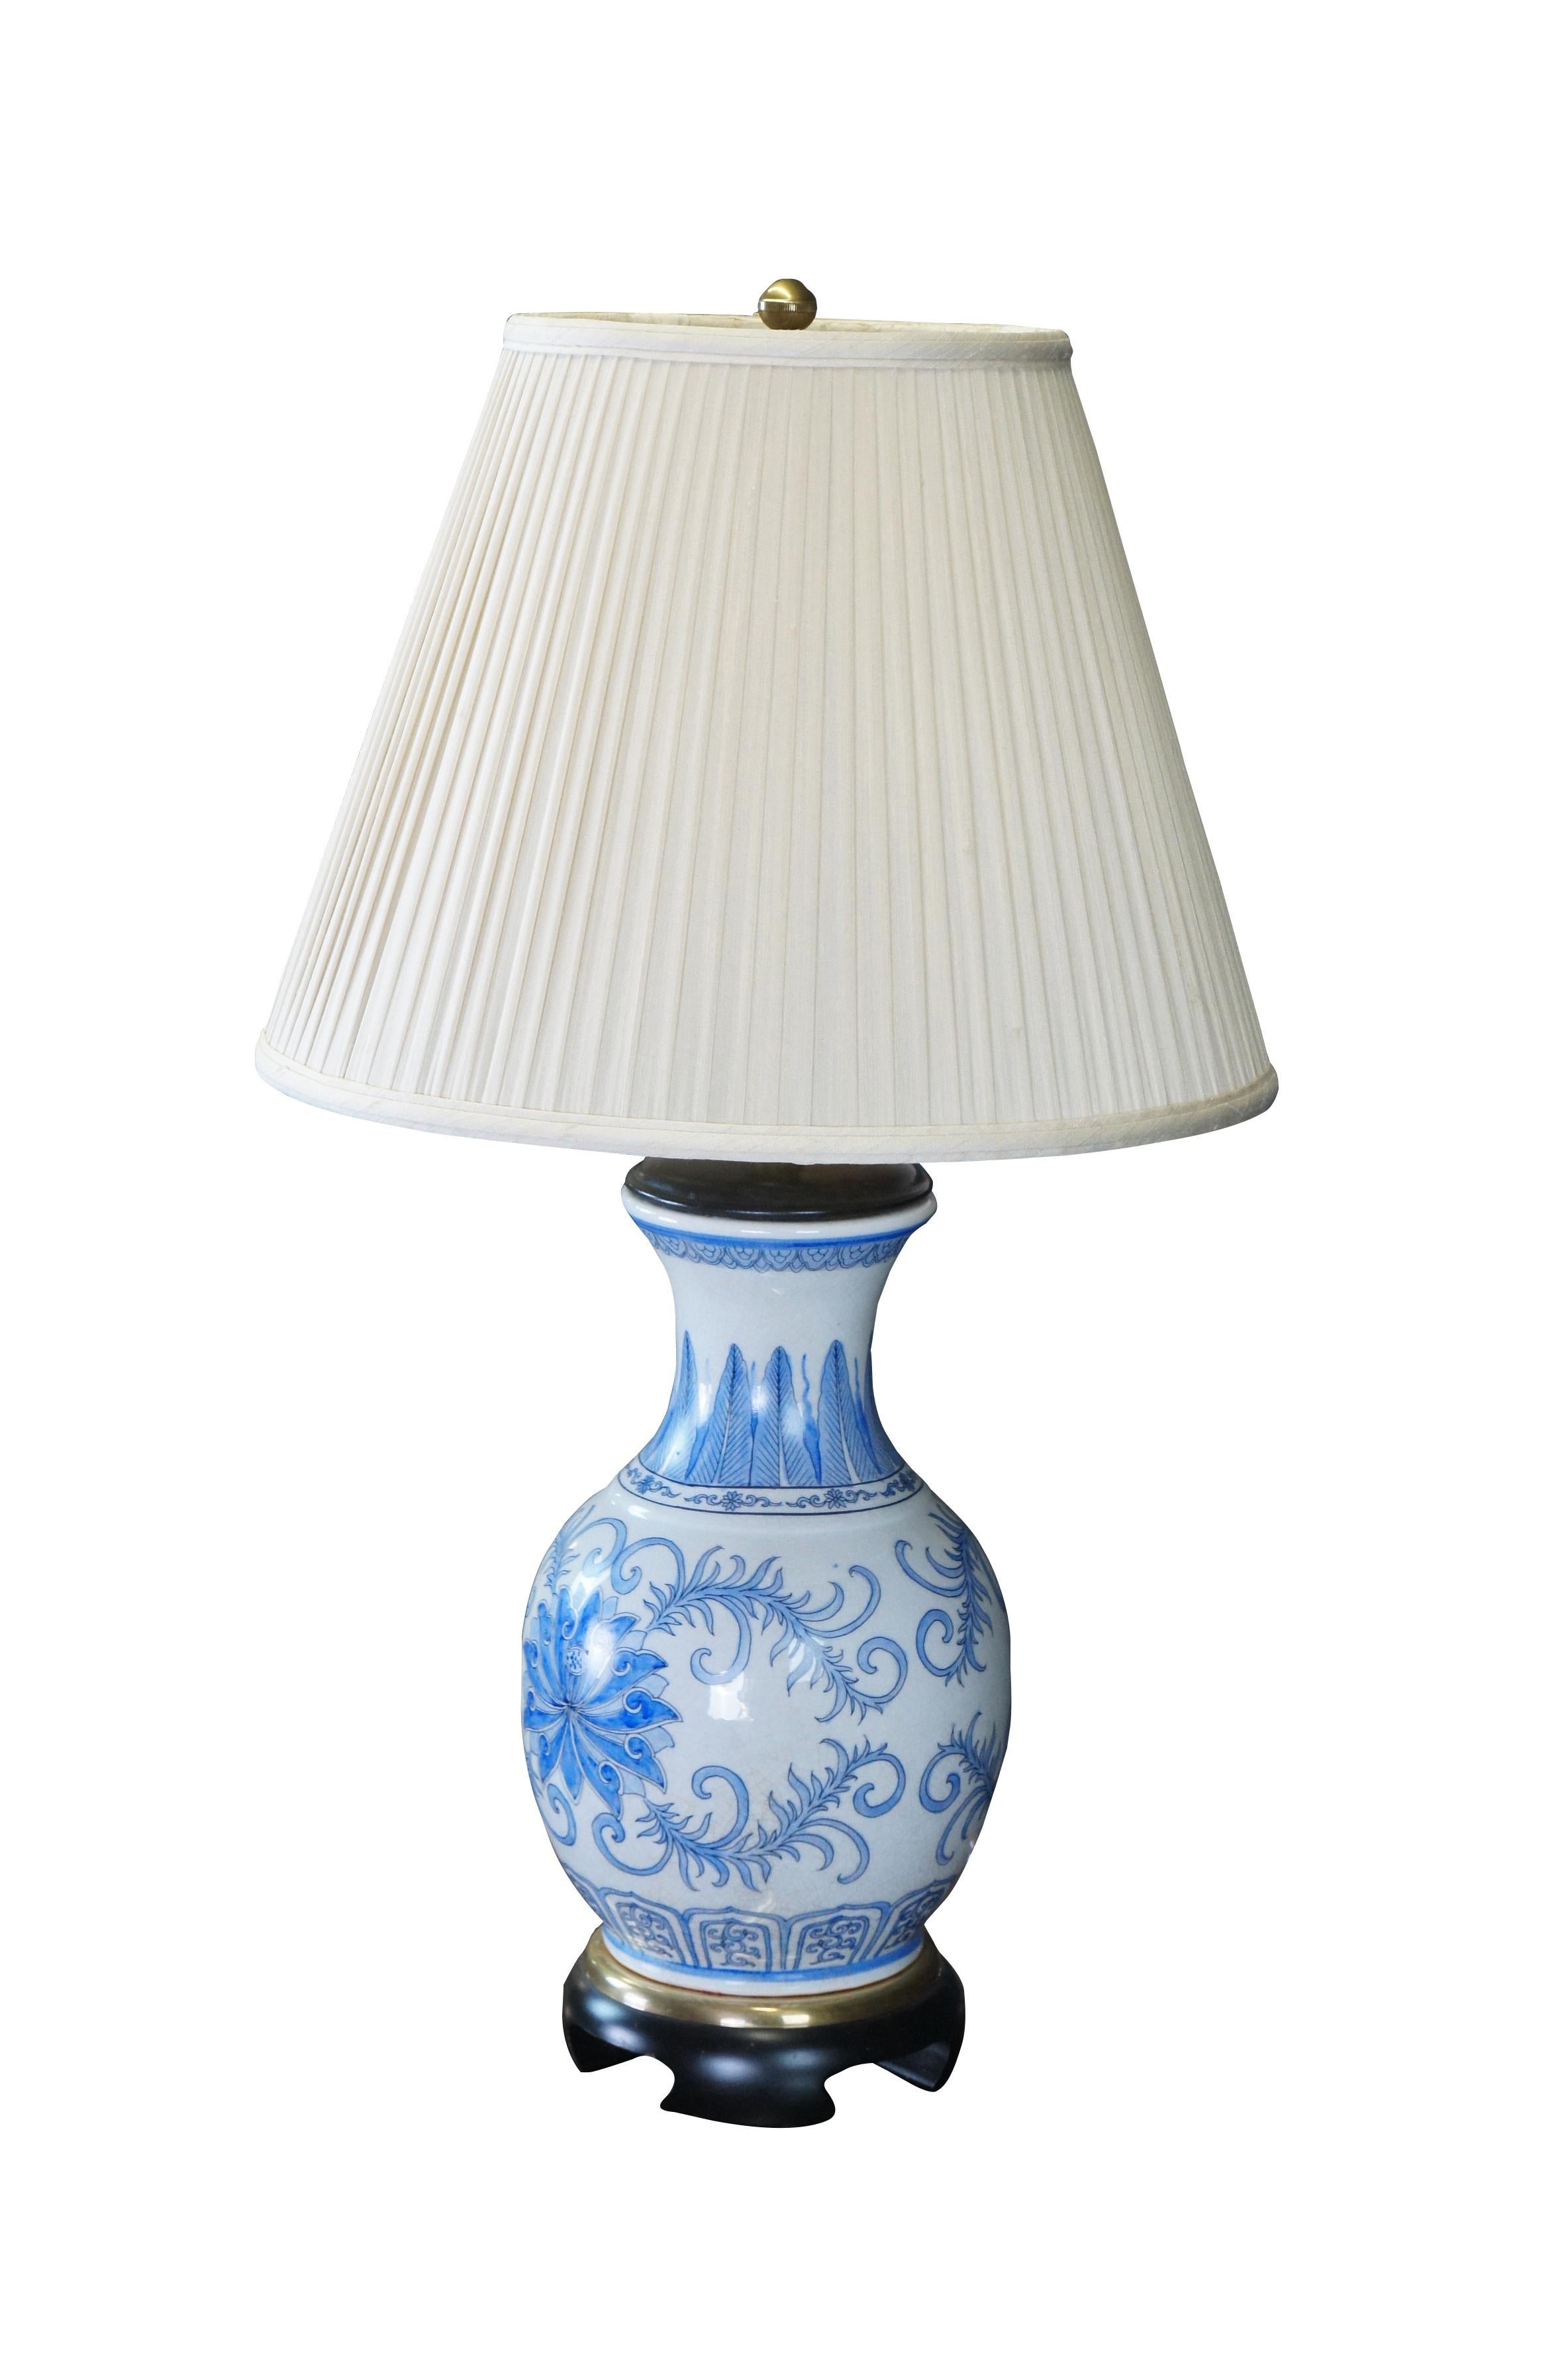 Lampe de table Vintage Frederick Cooper en porcelaine bleue et blanche avec un vase / urne / pot à motifs floraux de chinoiserie. 

Dimensions :
31